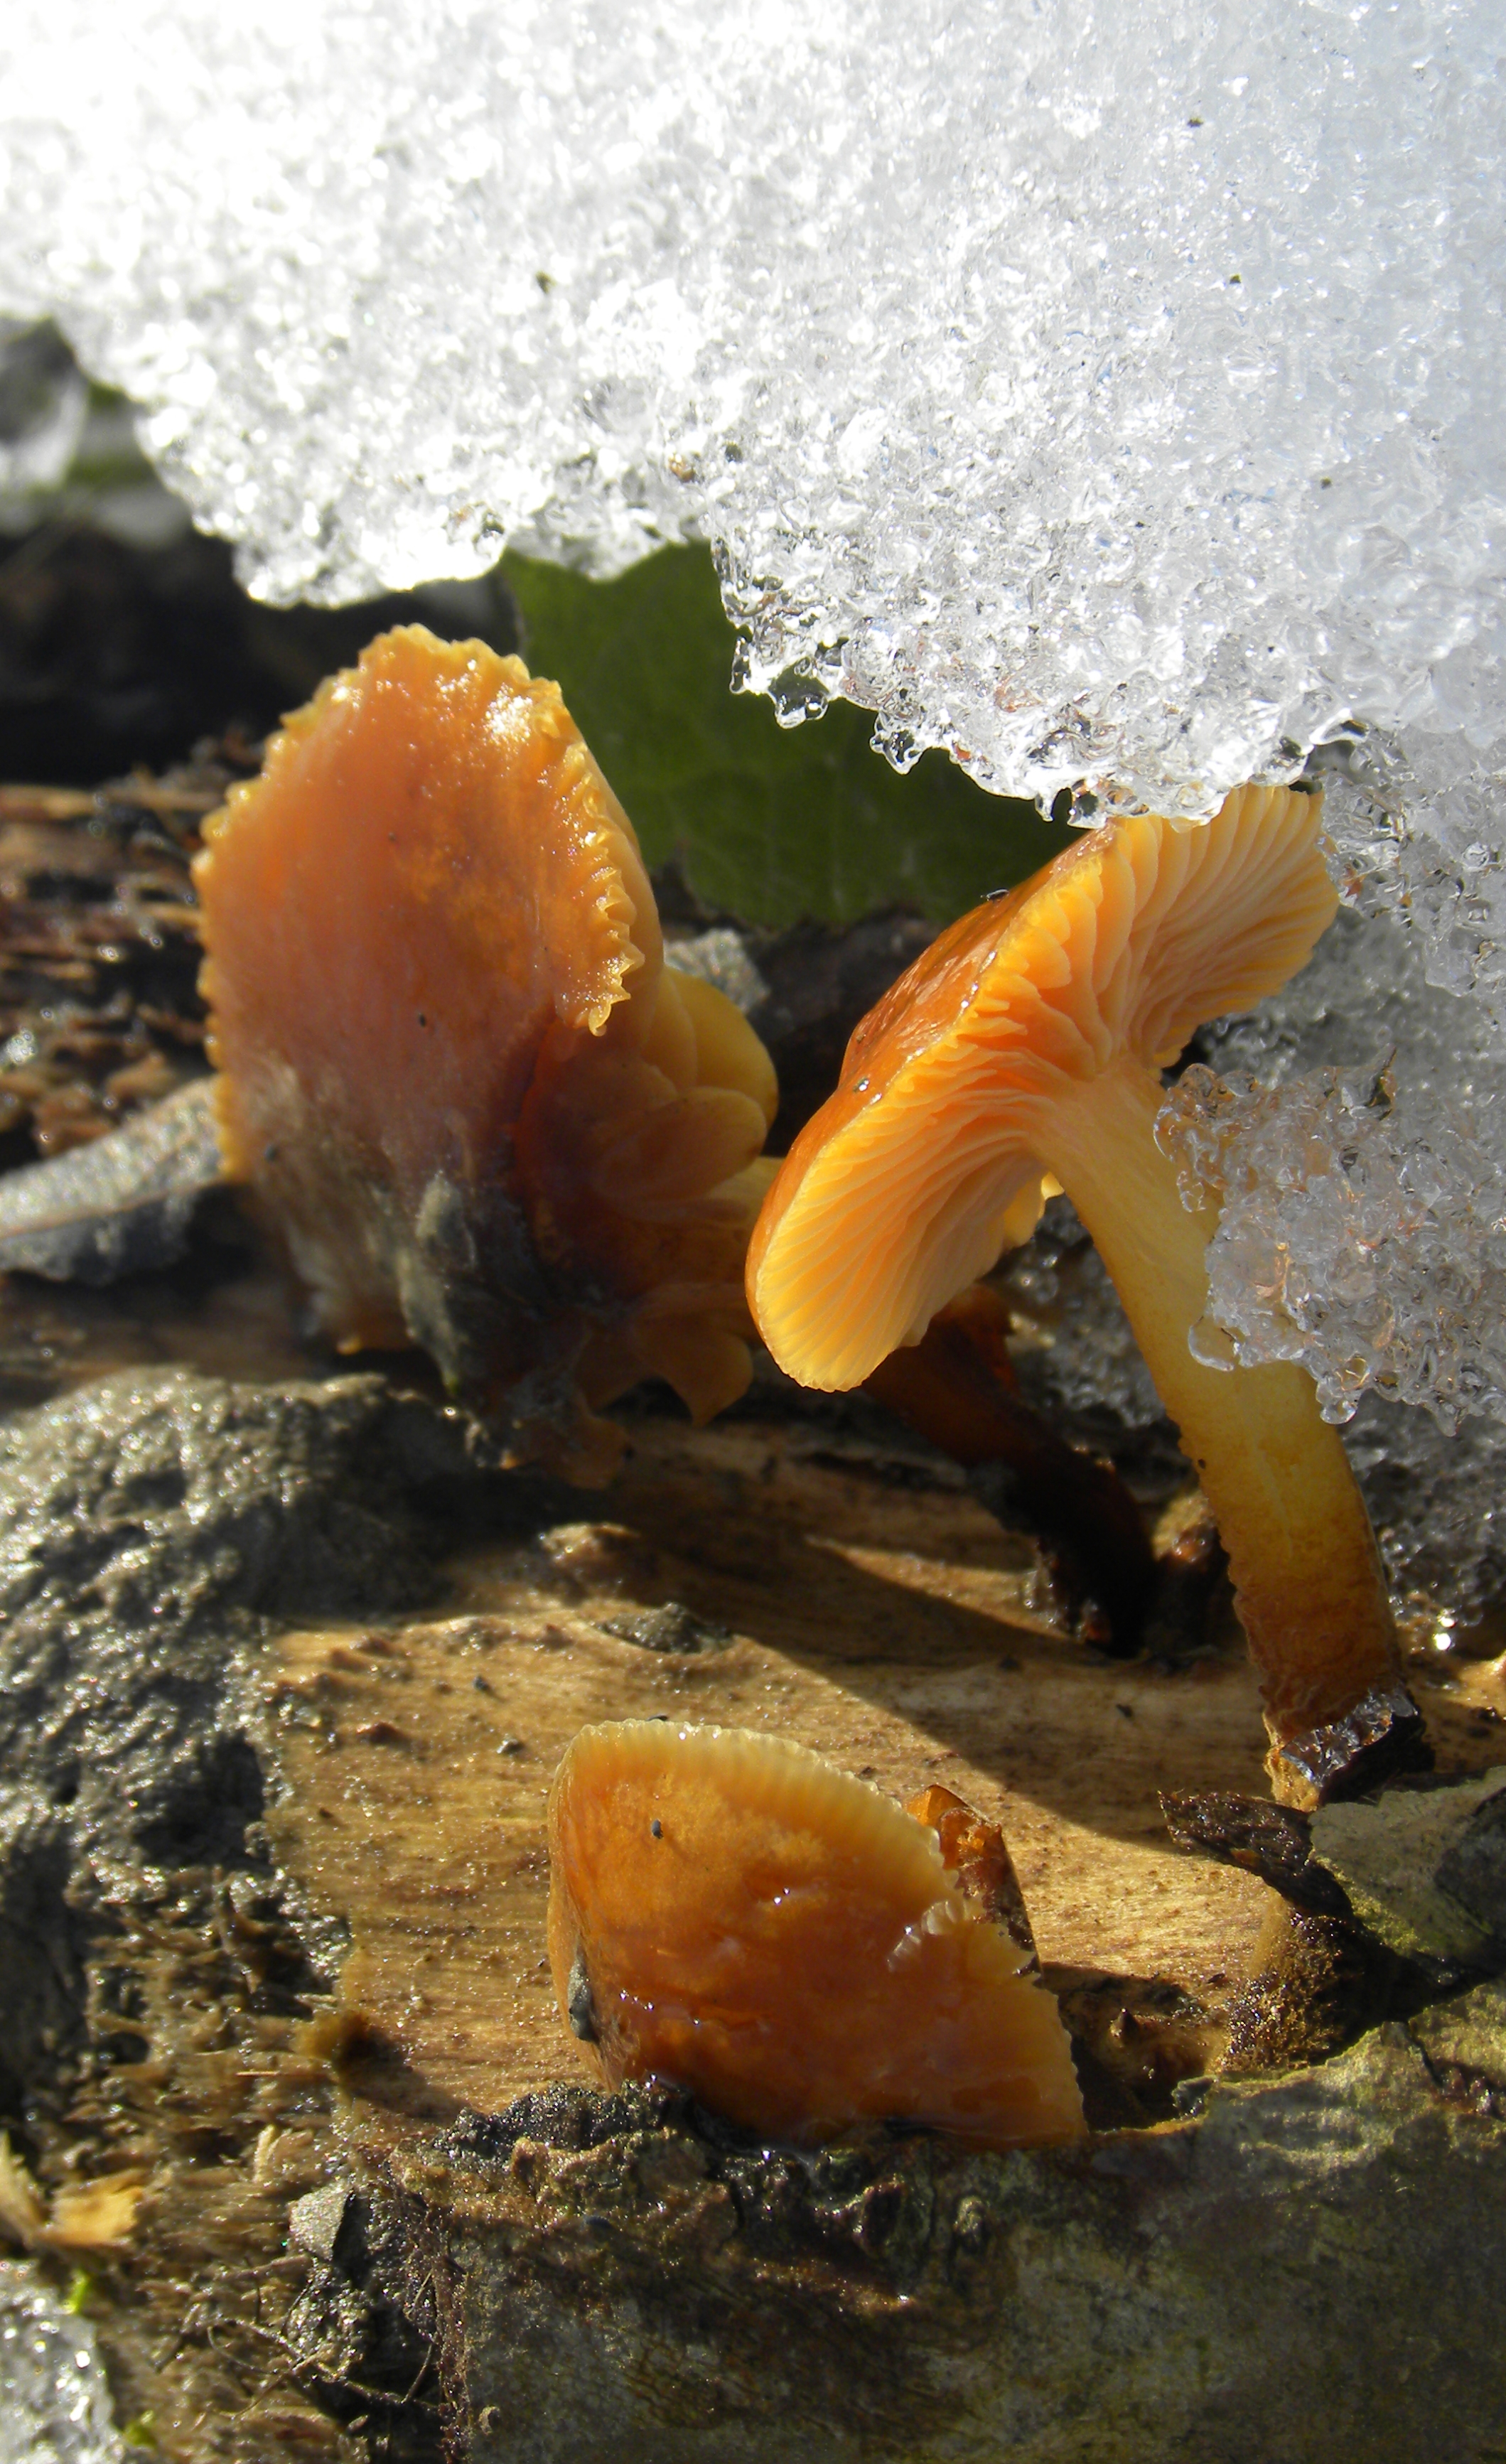 Mushrooms & ice